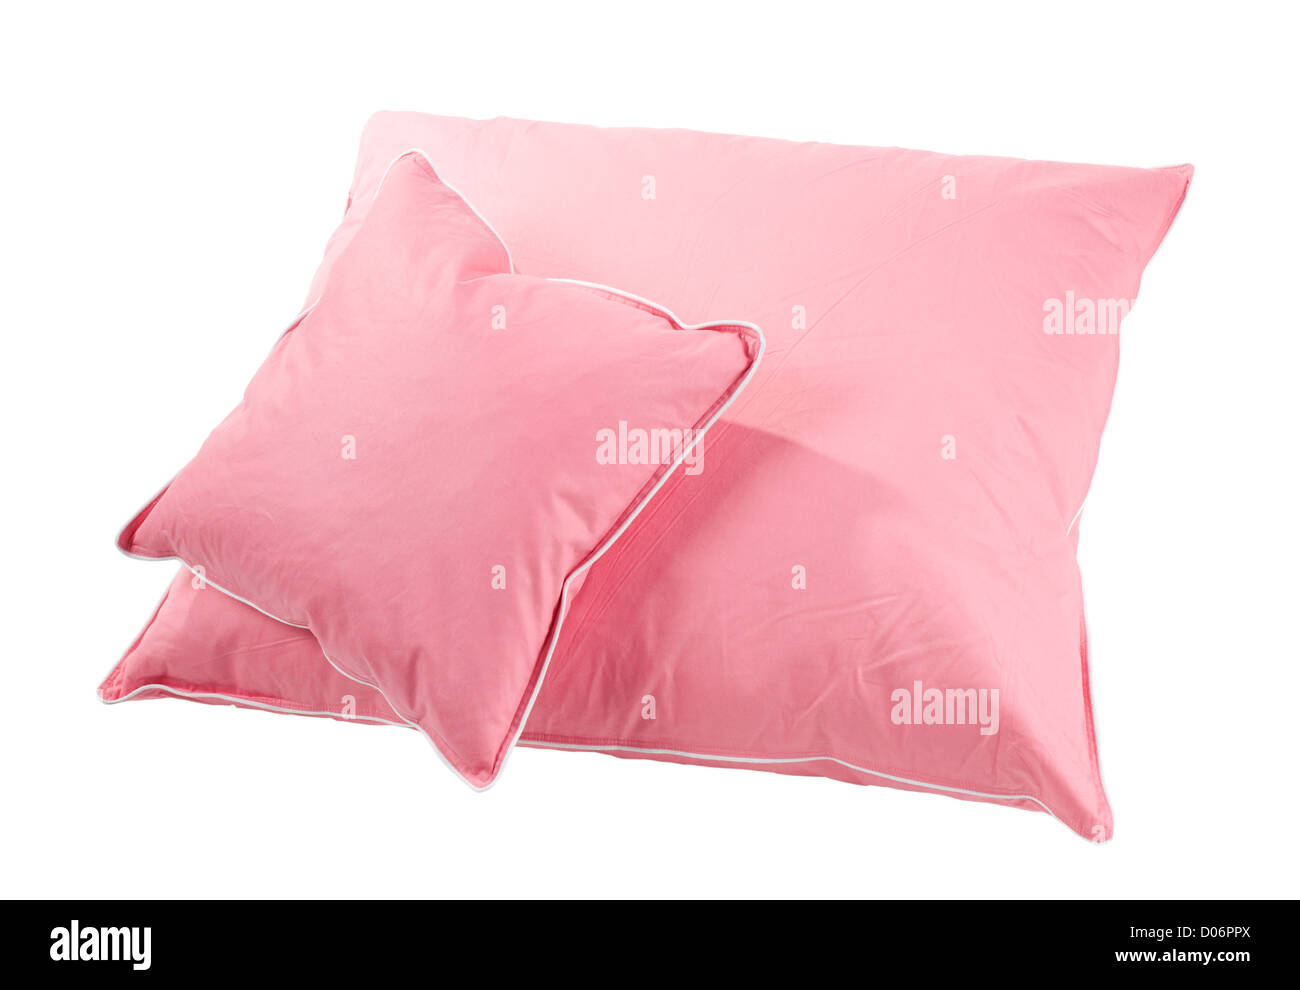 Zwei rosa Baumwolle Fusseln Kissen ohne Abdeckung Stockfoto